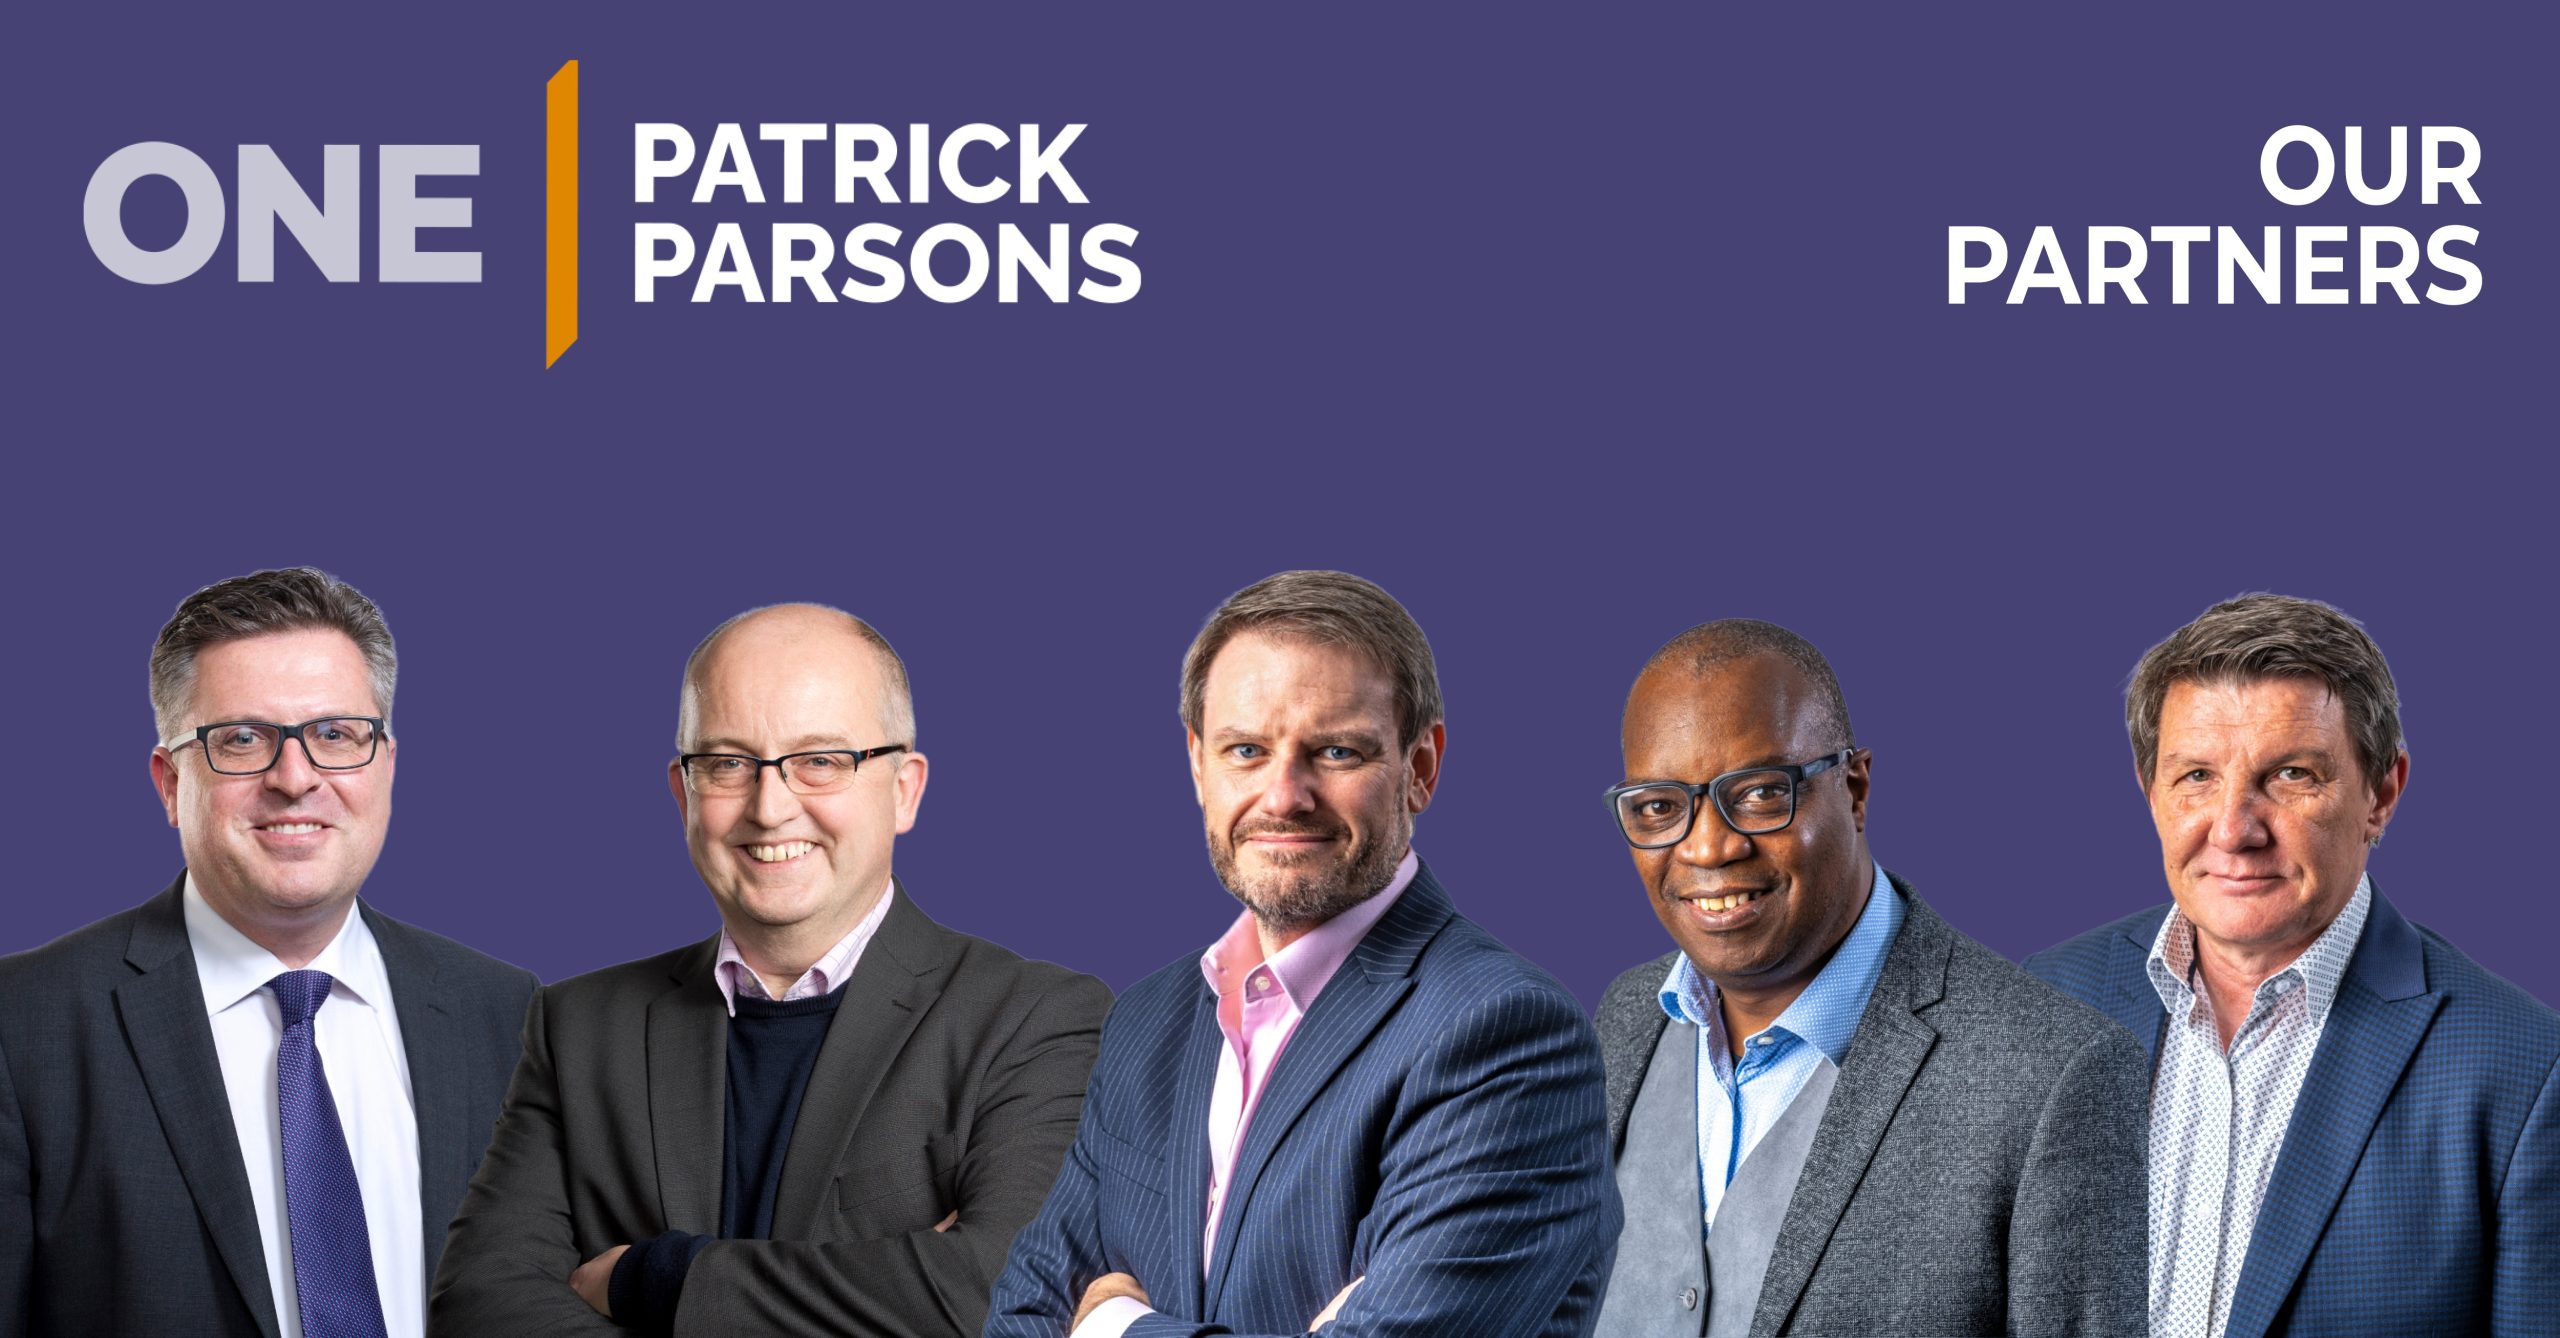 Patrick Parsons Partners